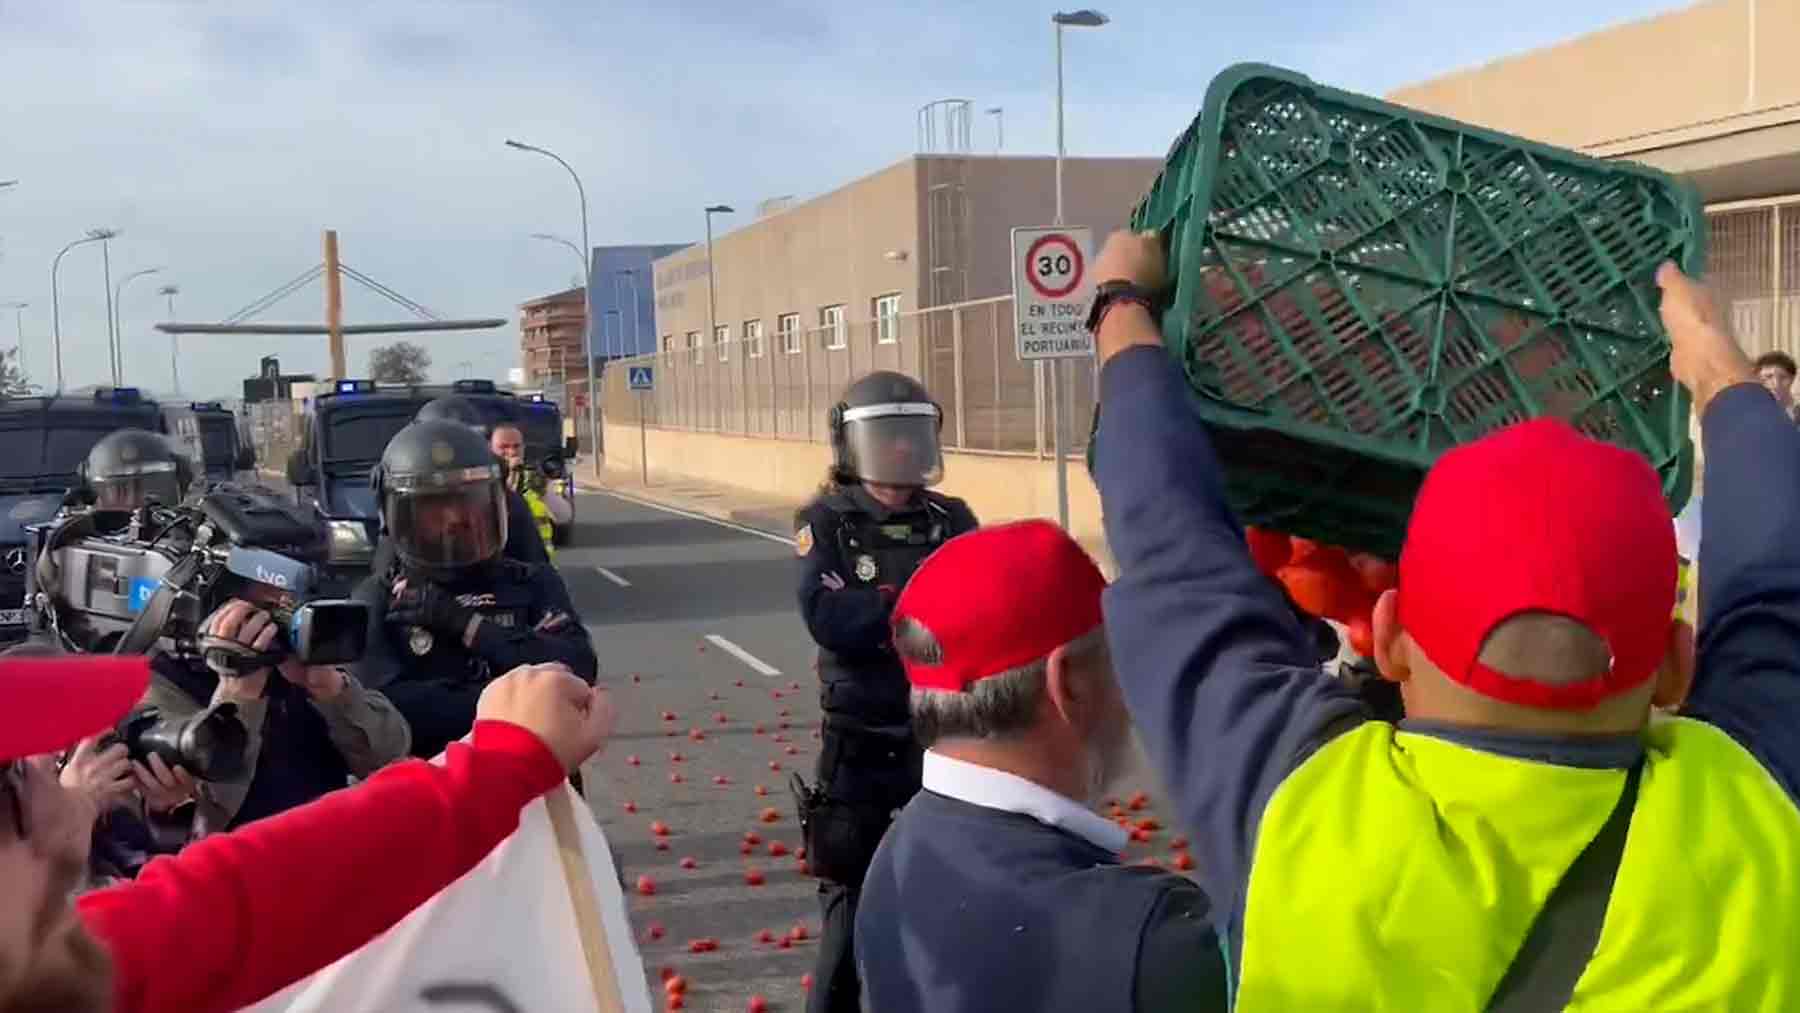 Los agricultores andaluces vuelven a volcar la carga de tomates de un camión procedente de Marruecos.